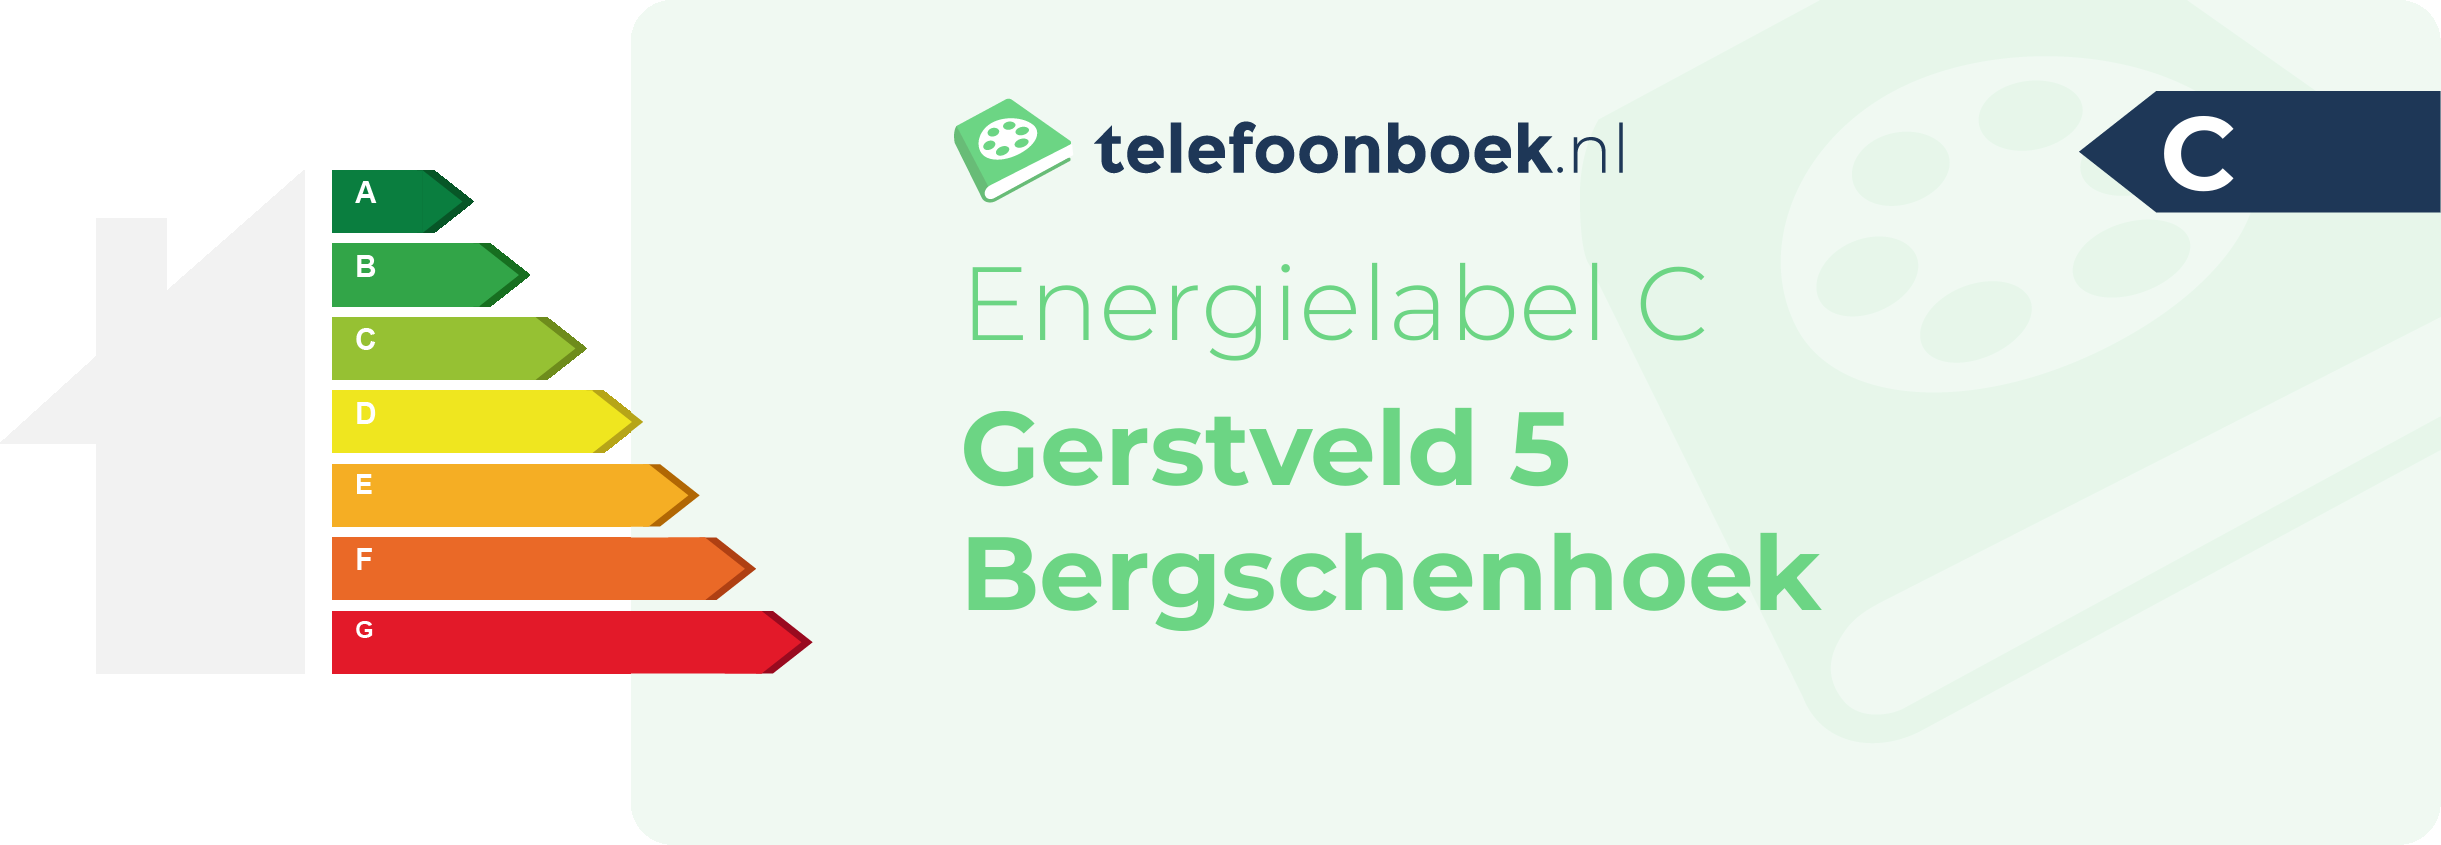 Energielabel Gerstveld 5 Bergschenhoek